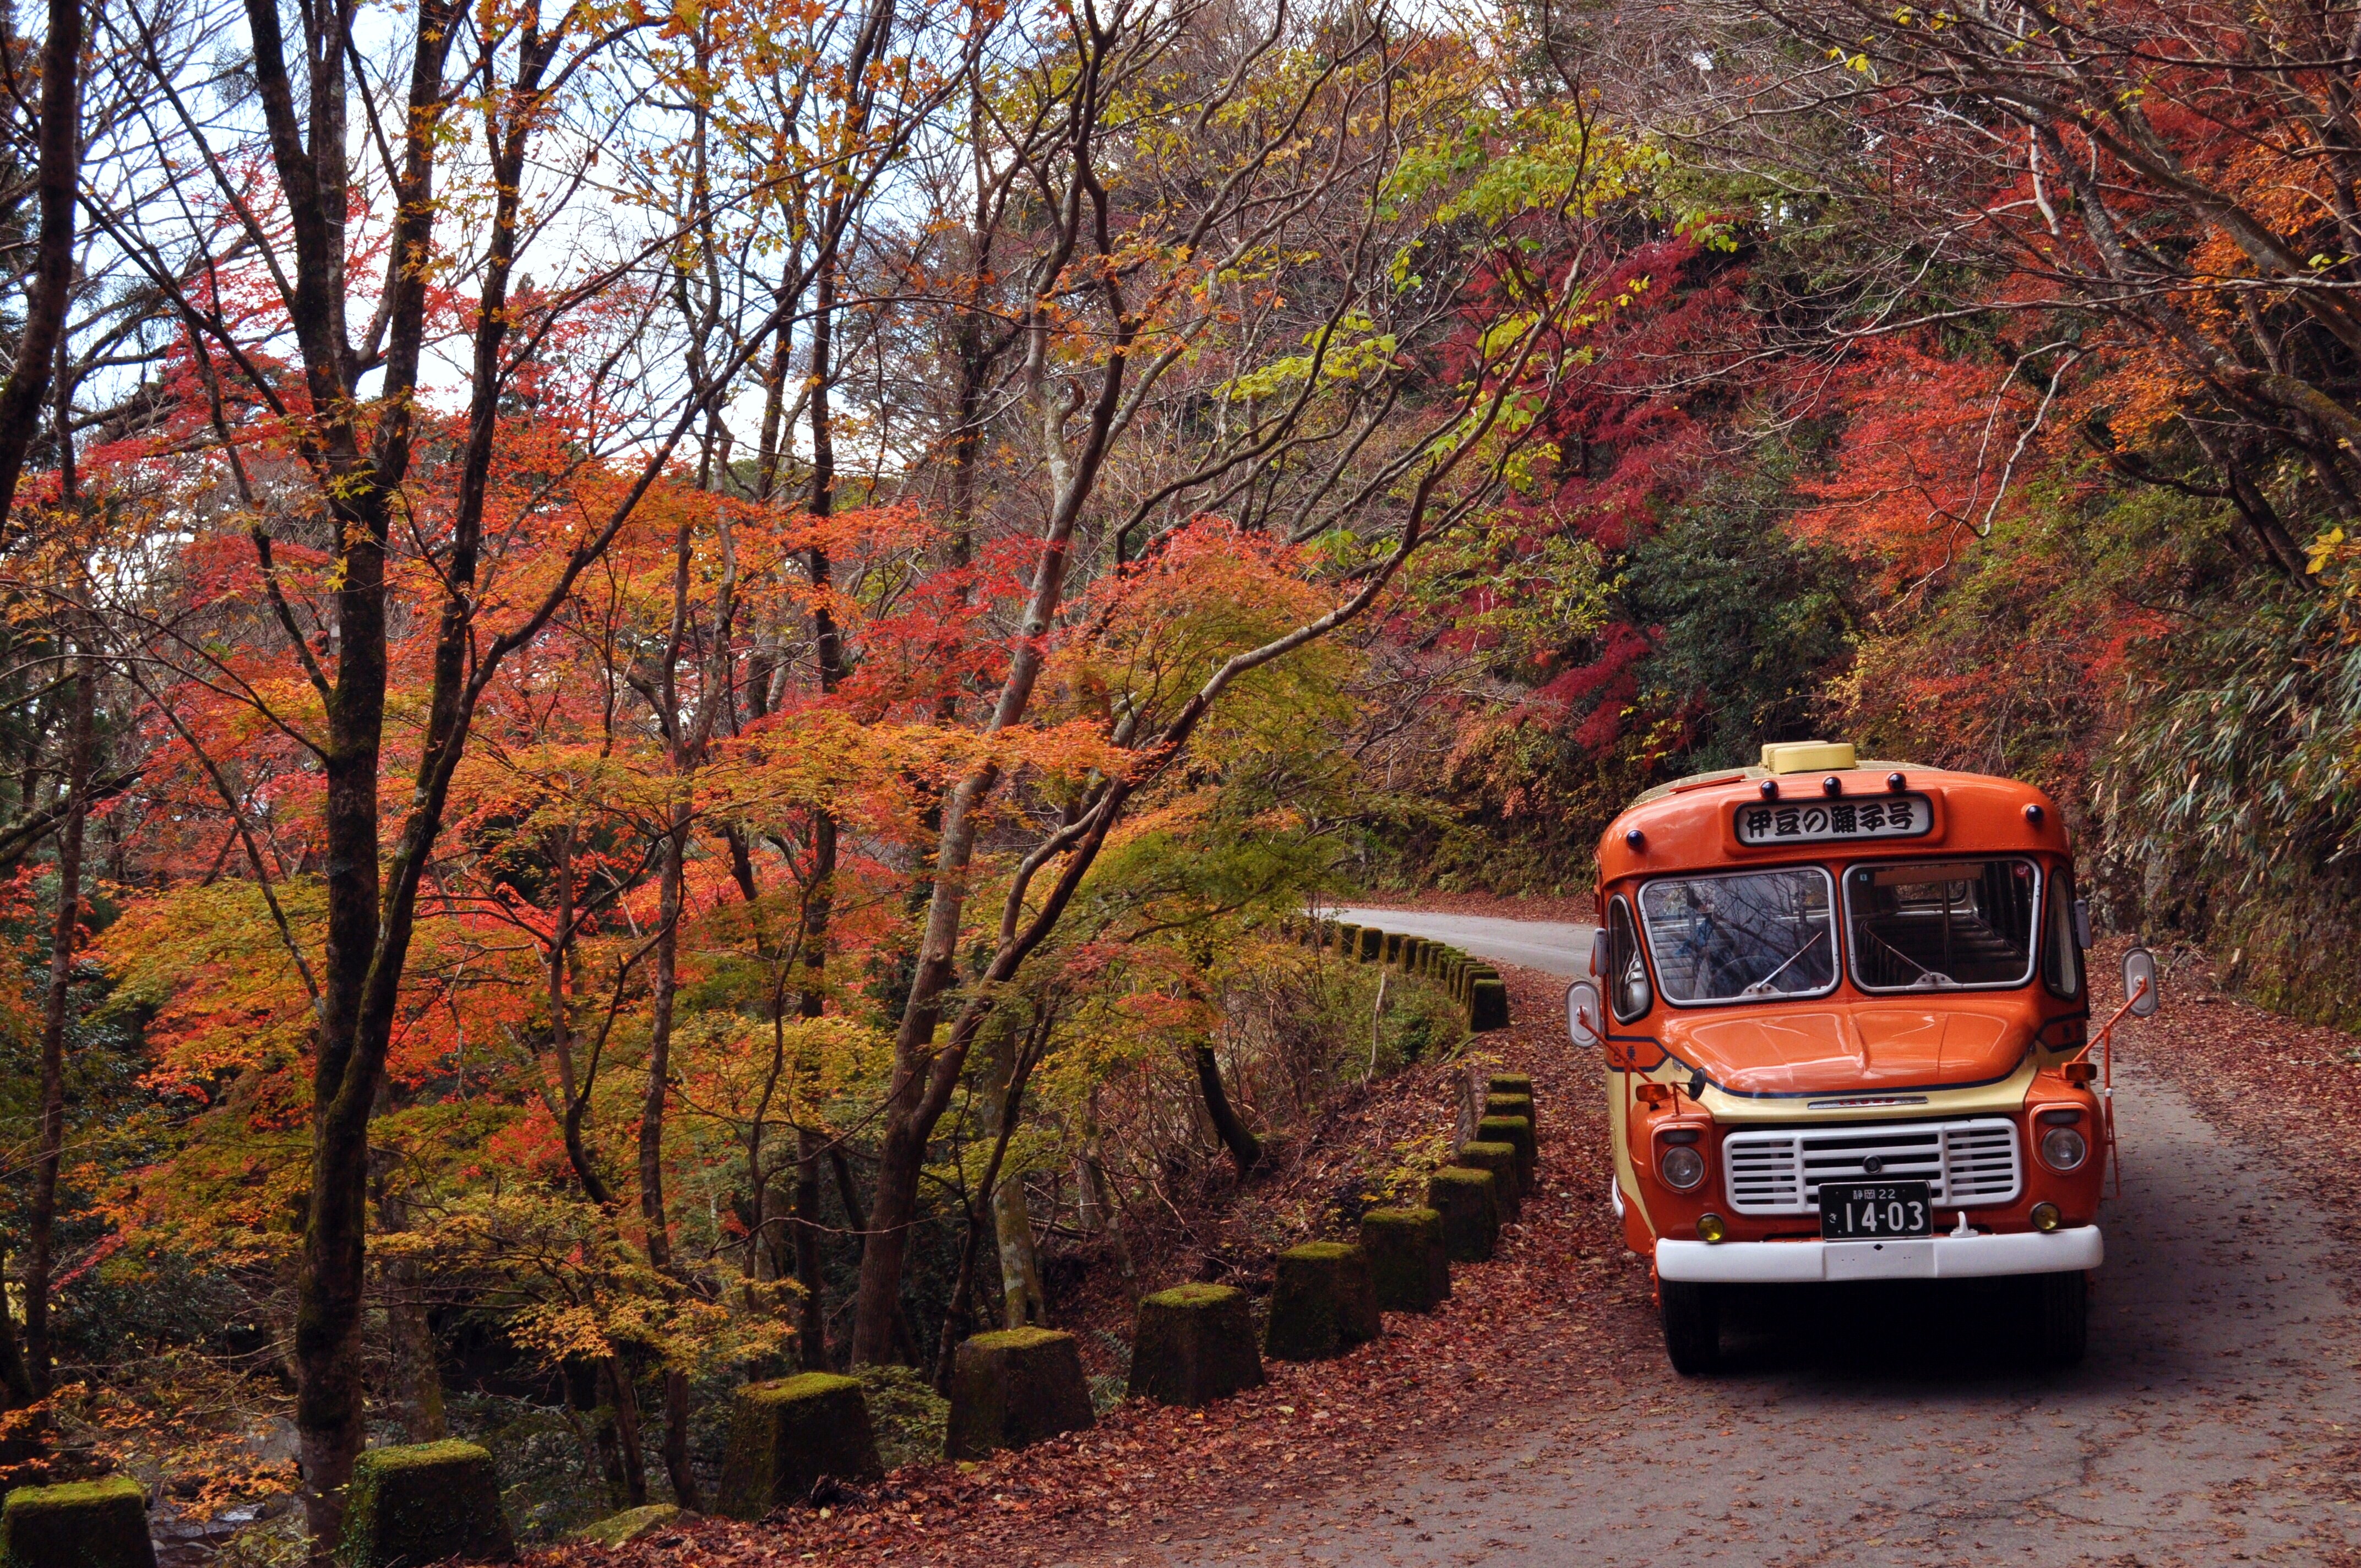 昭和39年(1964年)式の昭和レトロで可愛らしいボンネットバス「伊豆の踊子号」の貸切も承っております